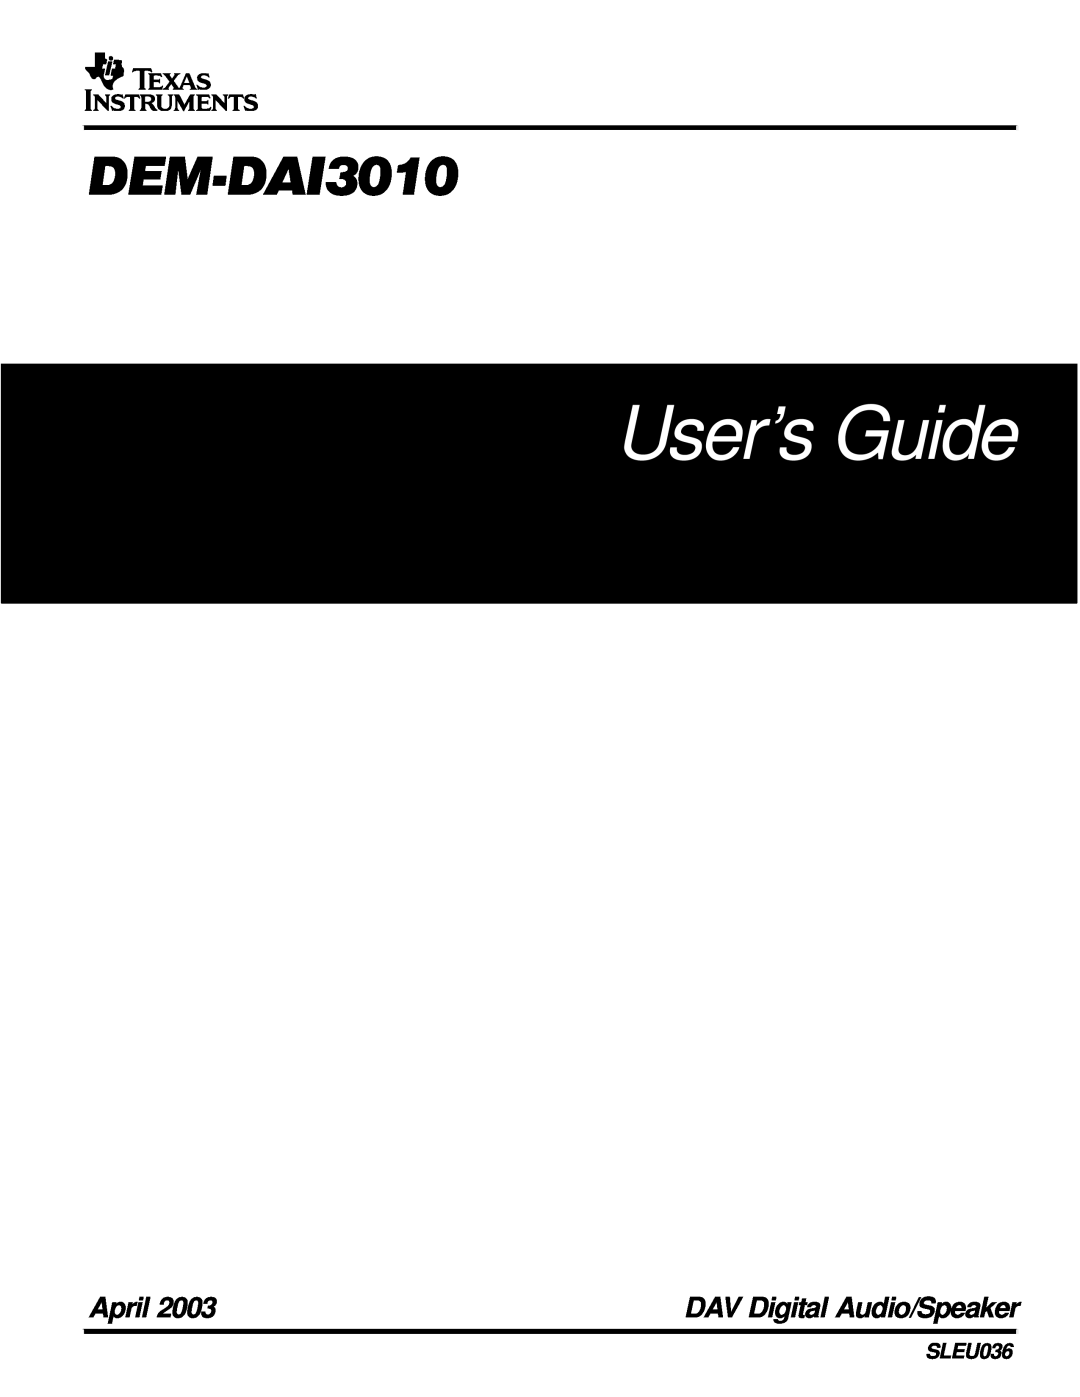 Texas Instruments DEM-DAI3010 manual User’s Guide, DEMDAI3010, April, DAV Digital Audio/Speaker, SLEU036 